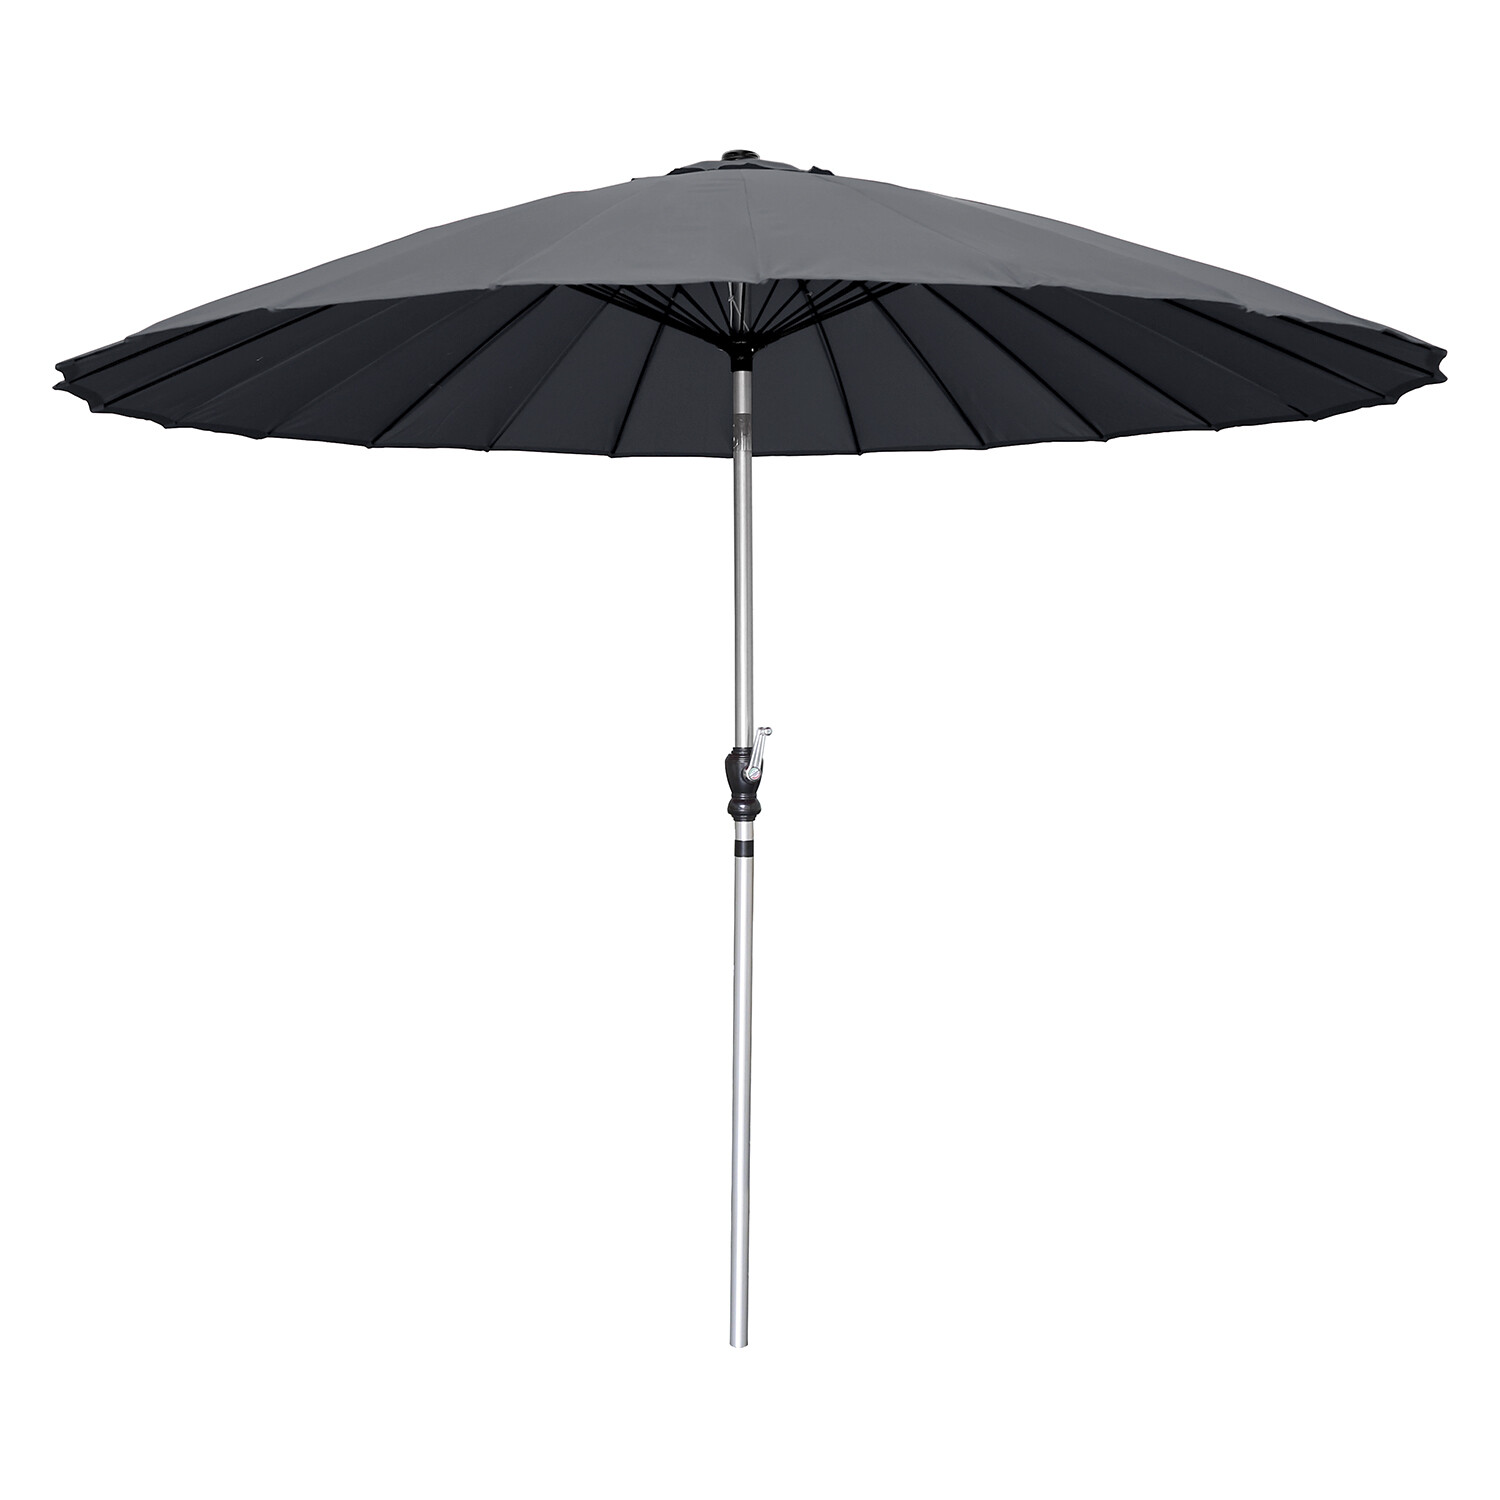 Black Shanghai Umbrella Parasol 2.45m Image 1